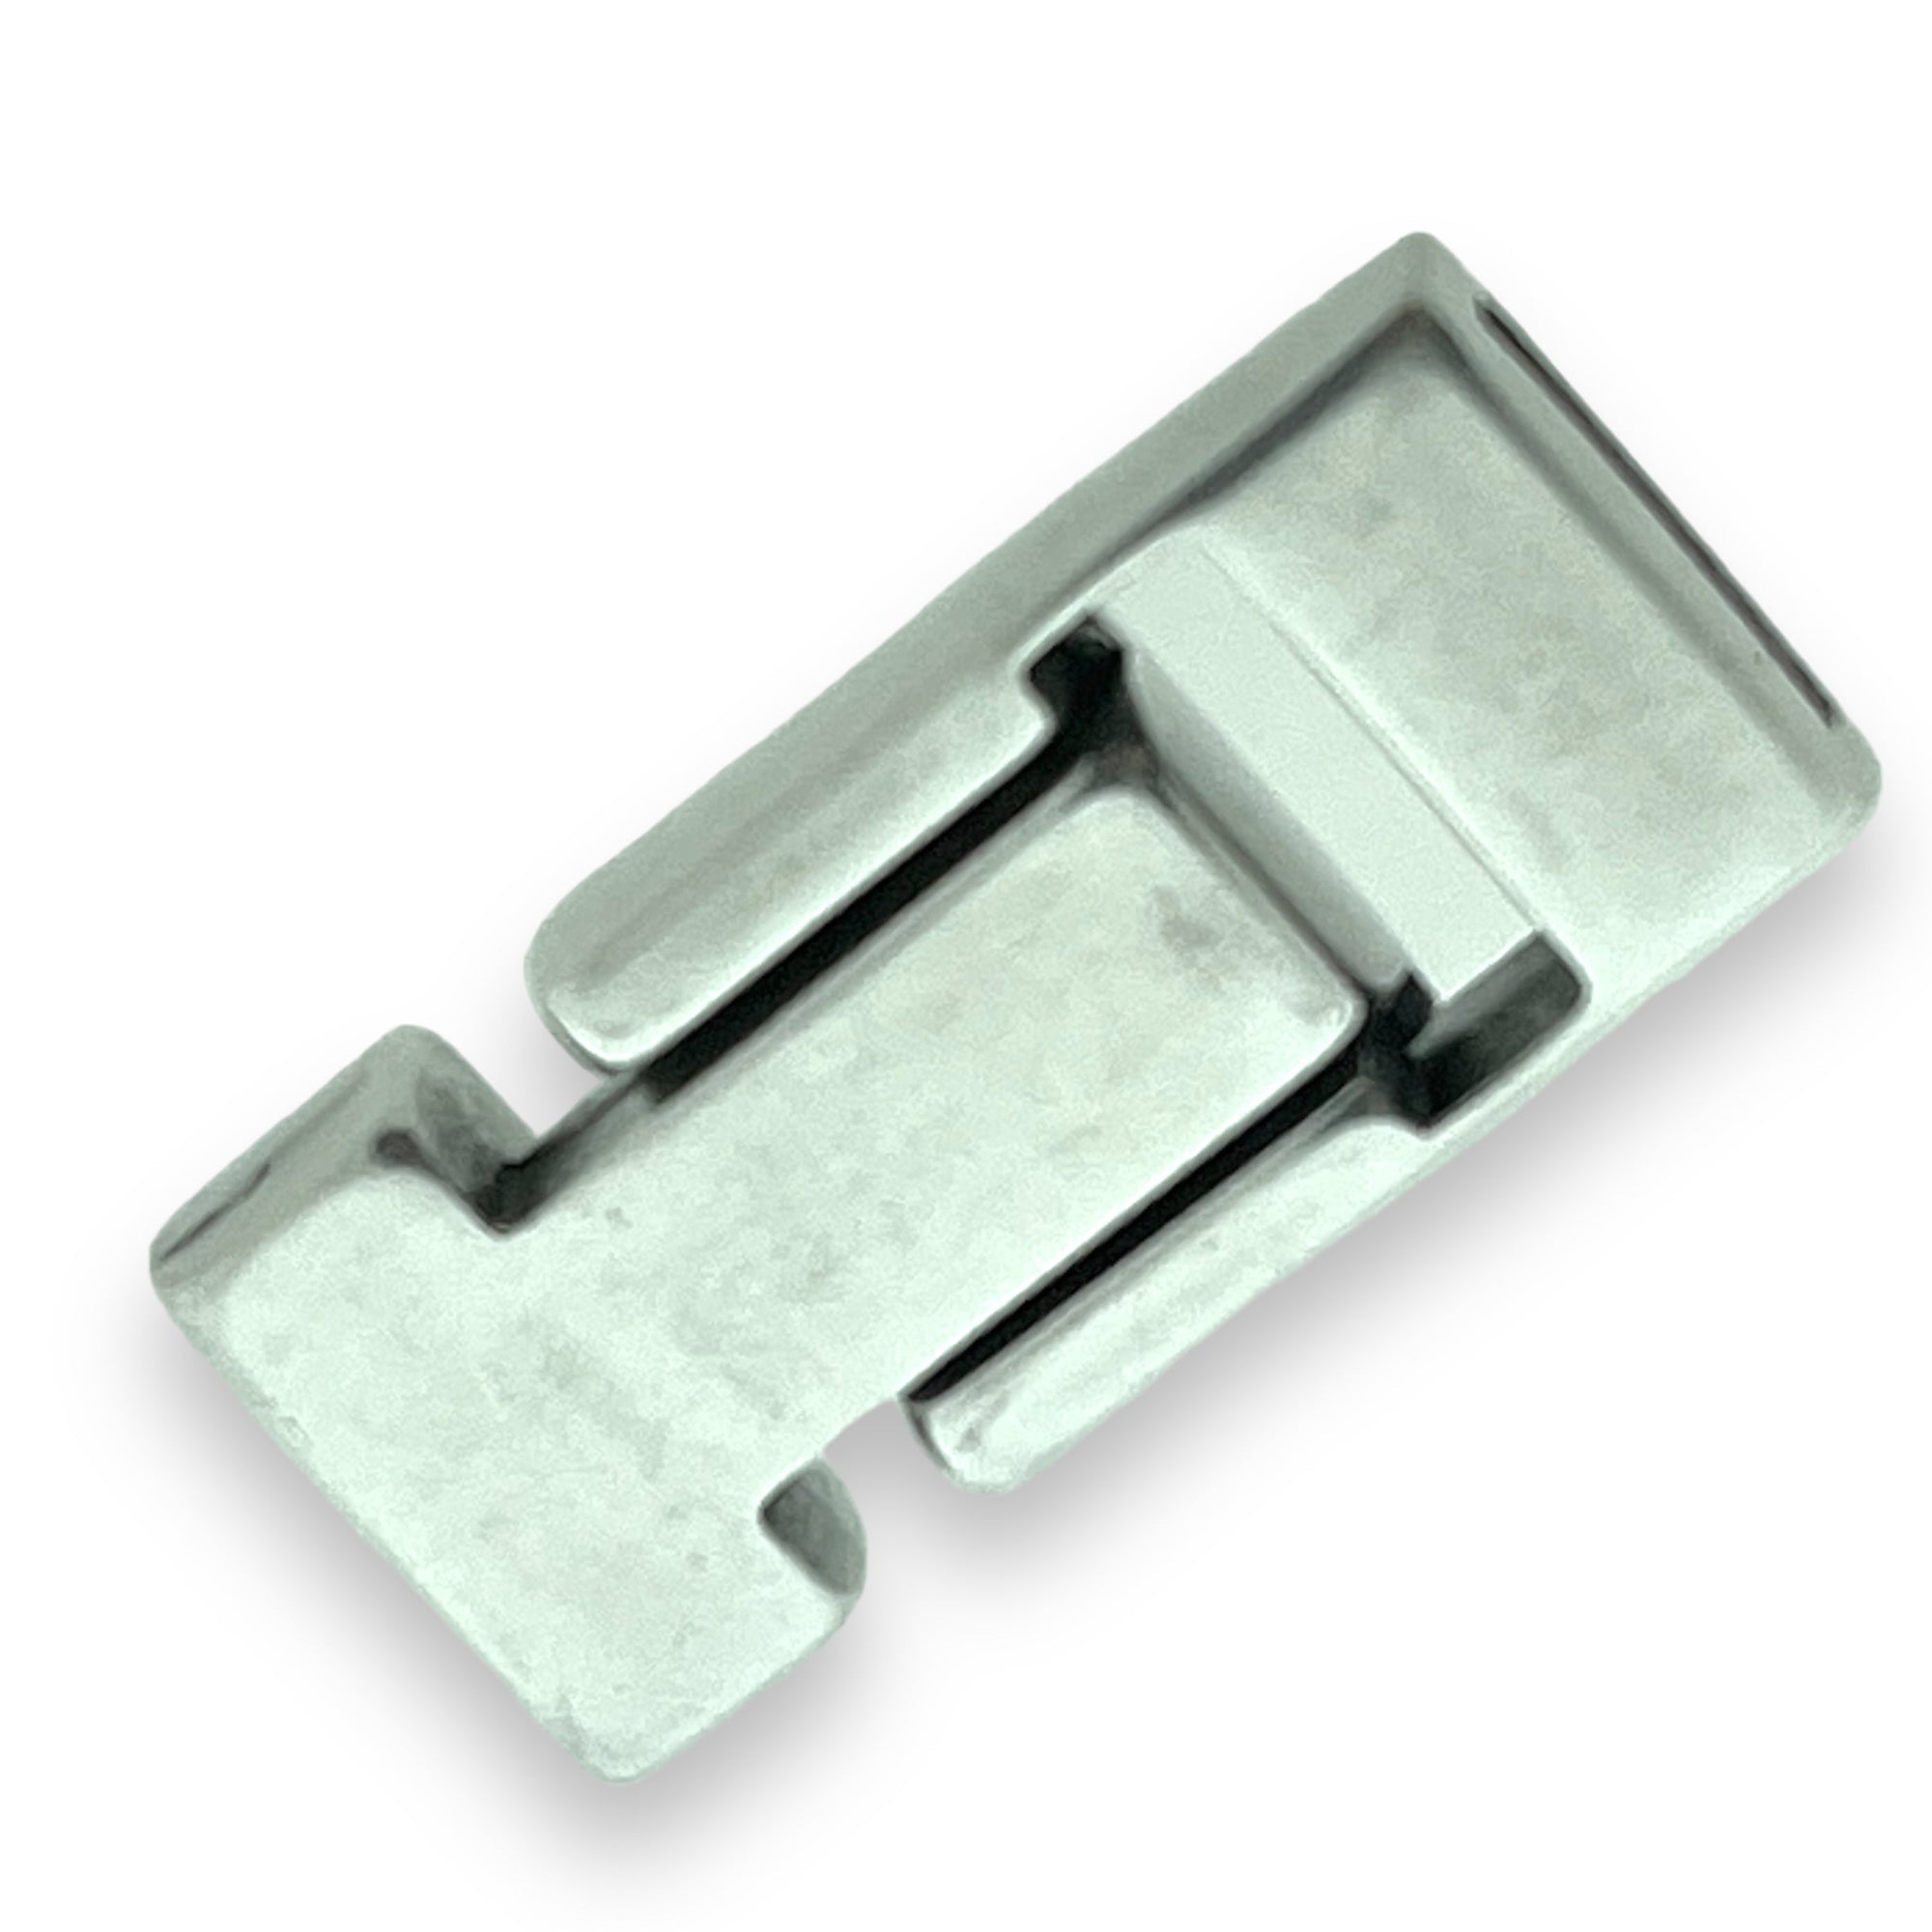 Magneetsluiting T-vorm Ø10x2,5mm Zilver DQ-sluitingen-Kraaltjes van Renate